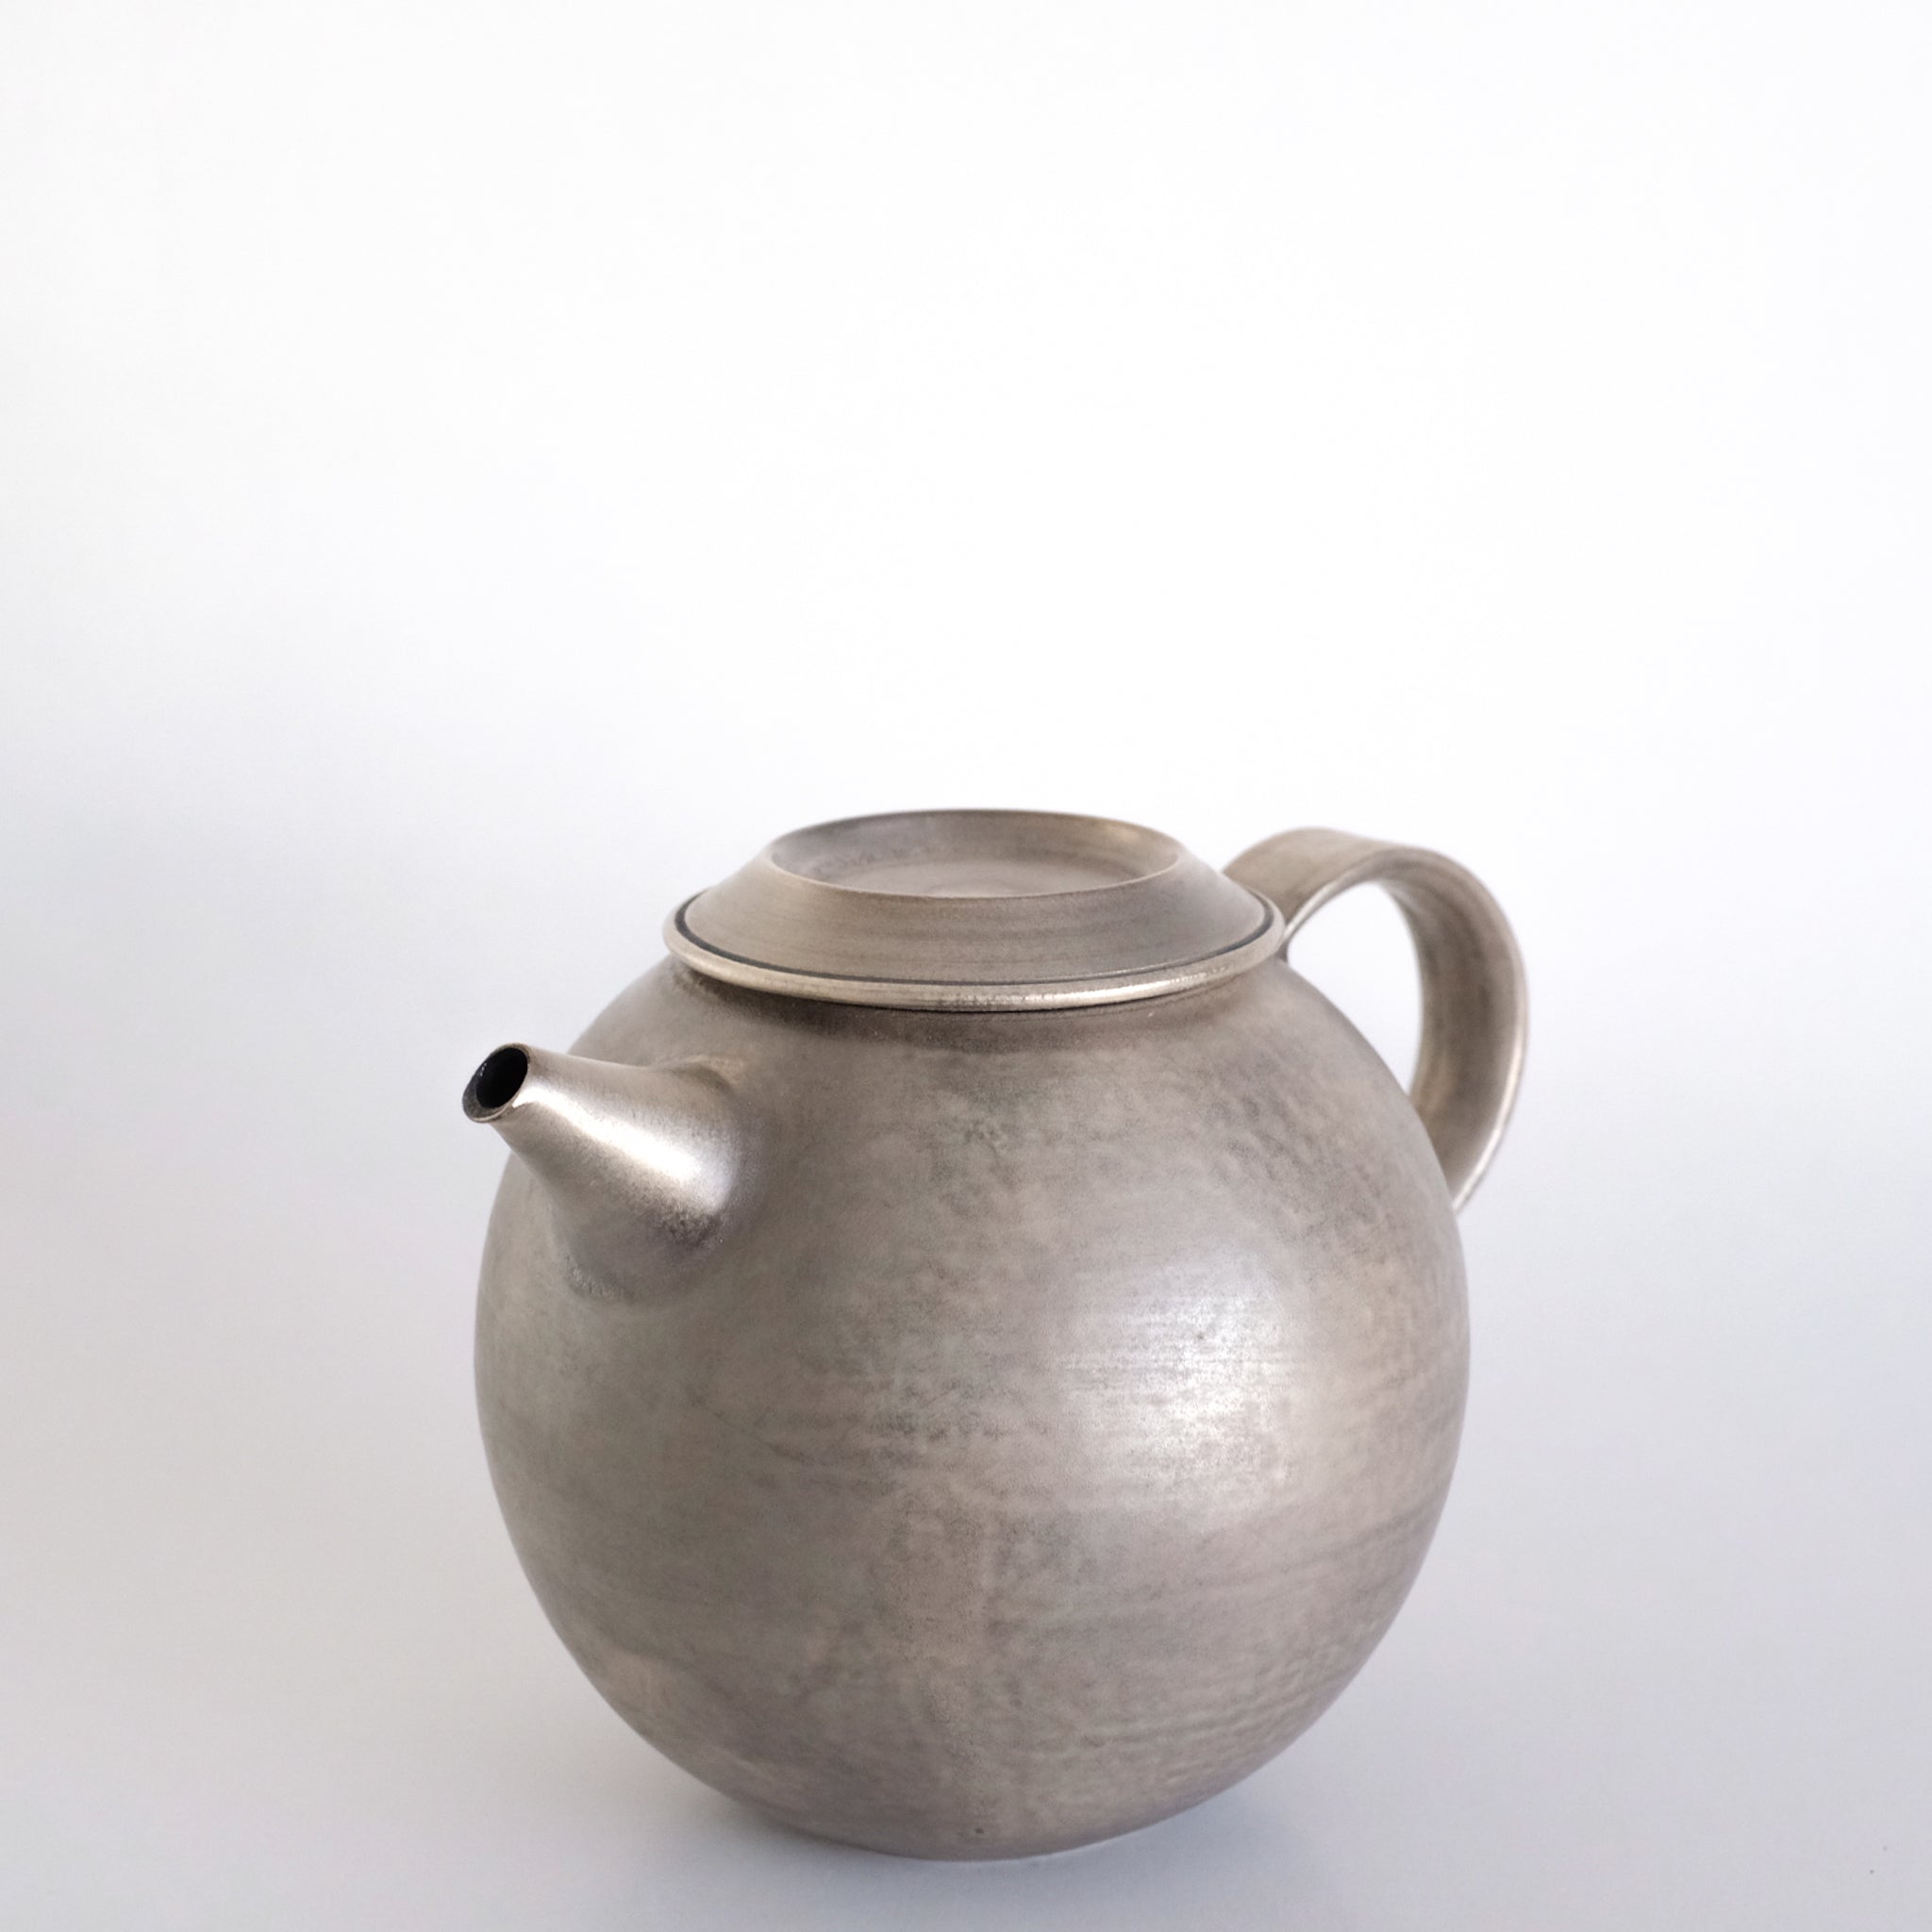 服部竜也   銀彩ピューター ポット  Tatsuya Hattori Pot ( oxidized silver ) ETH3